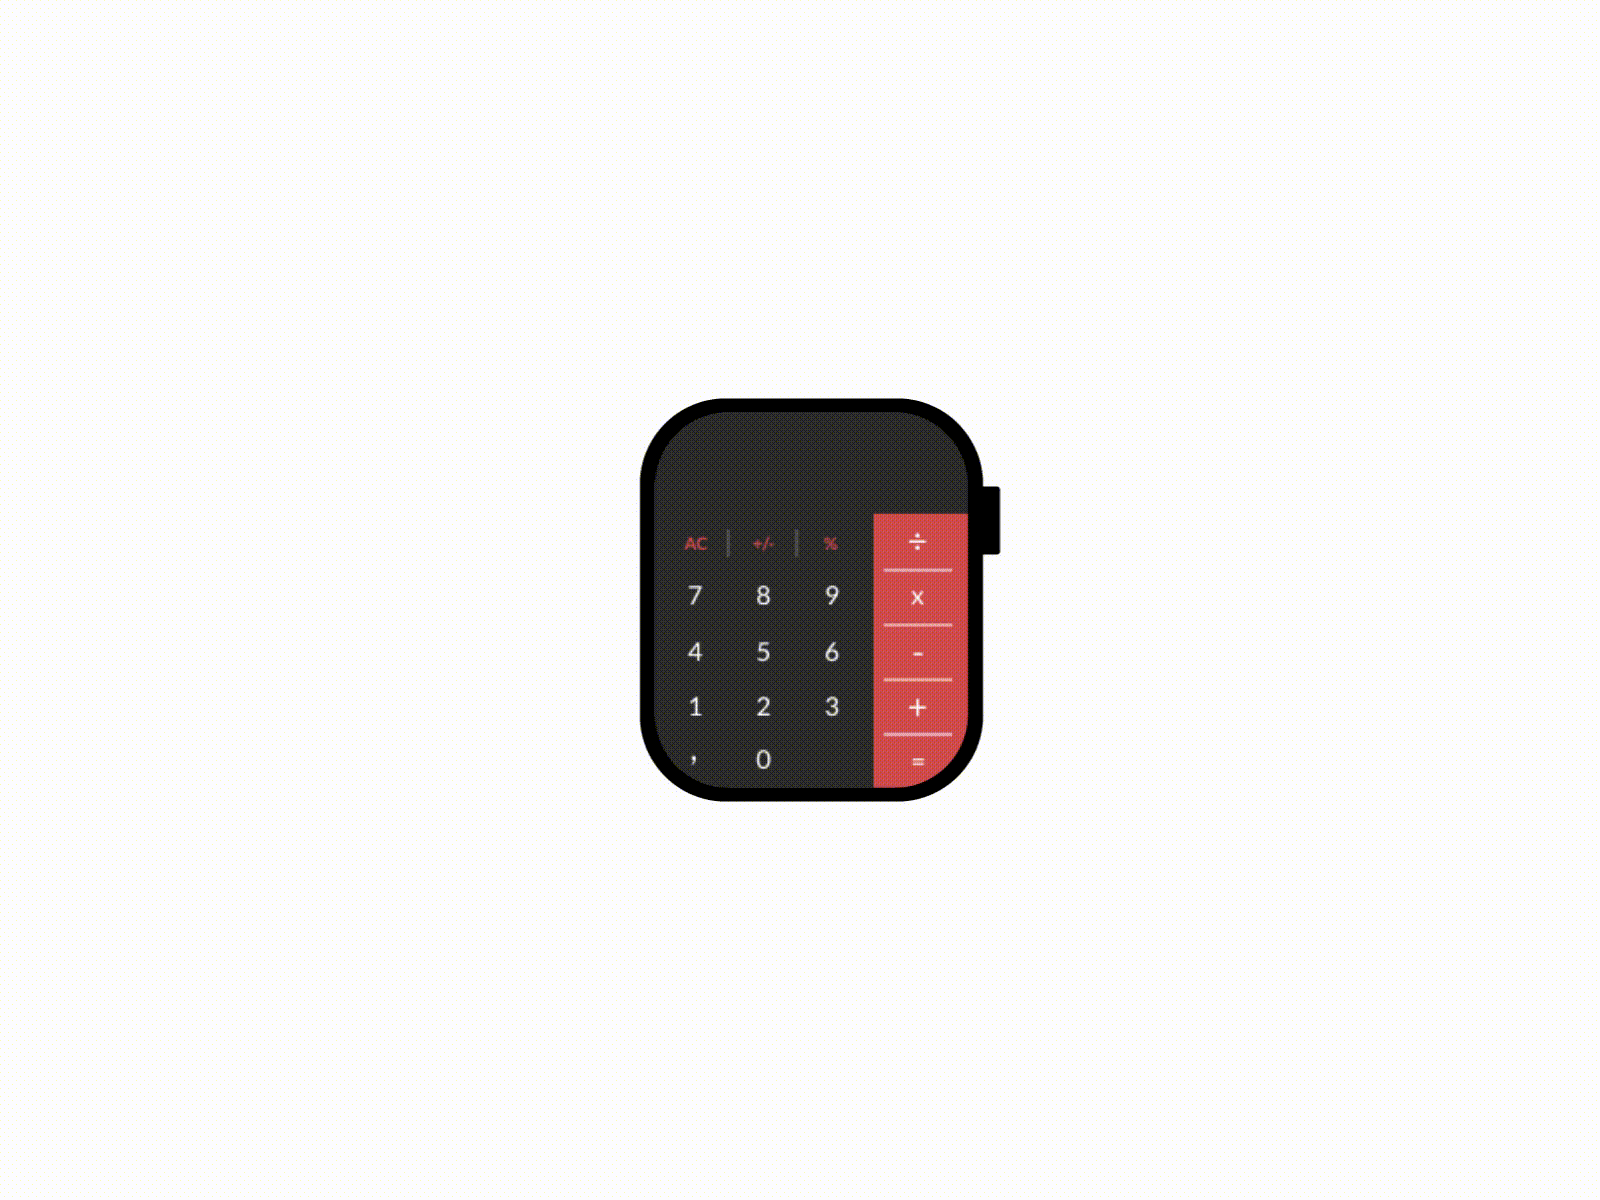 Smartwatch Calculator adobe xd animation calculator clean concept dailyui design flat mobile smartwatch ui ui design uiux